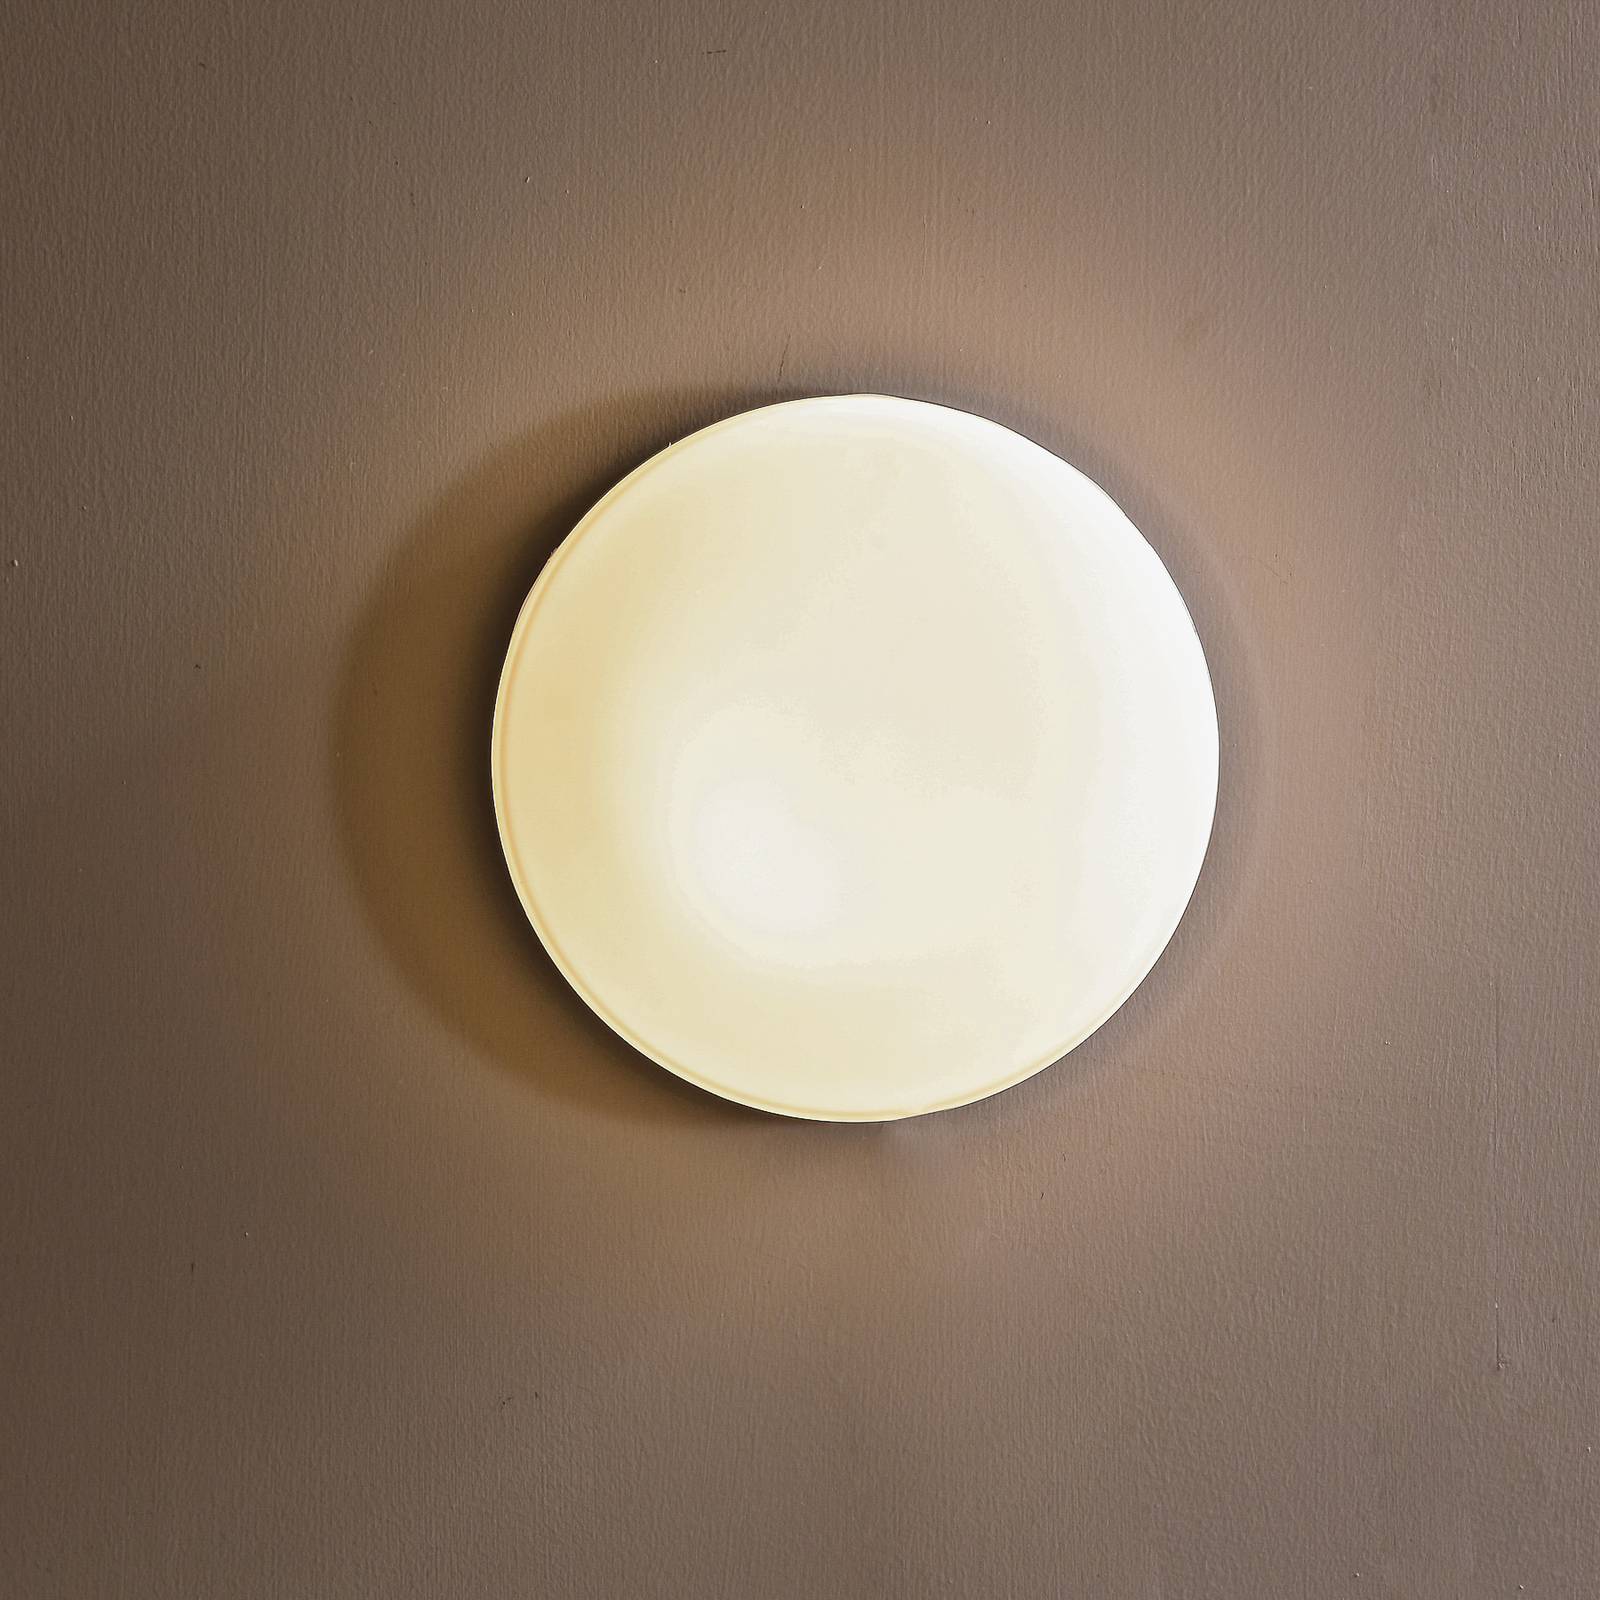 Arcchio Aliras plafonnier bain LED, chromé, 24 cm